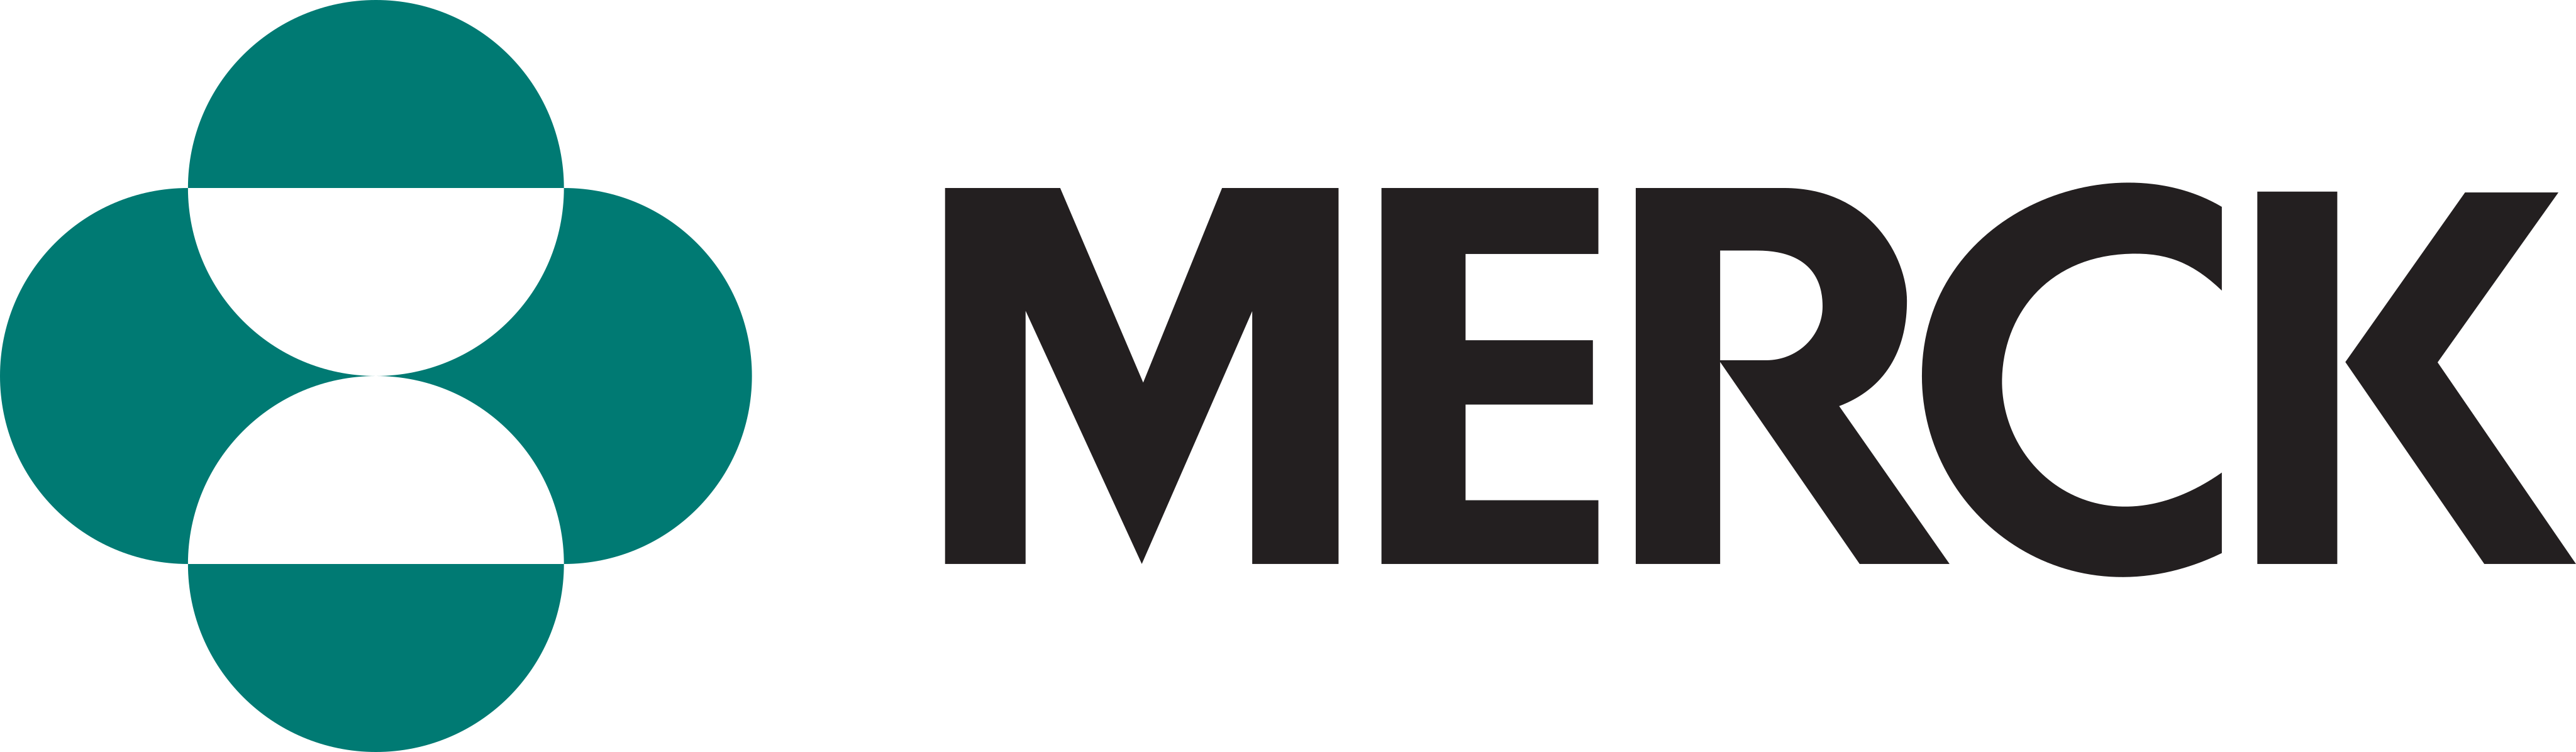 merck logo - Merck Logo